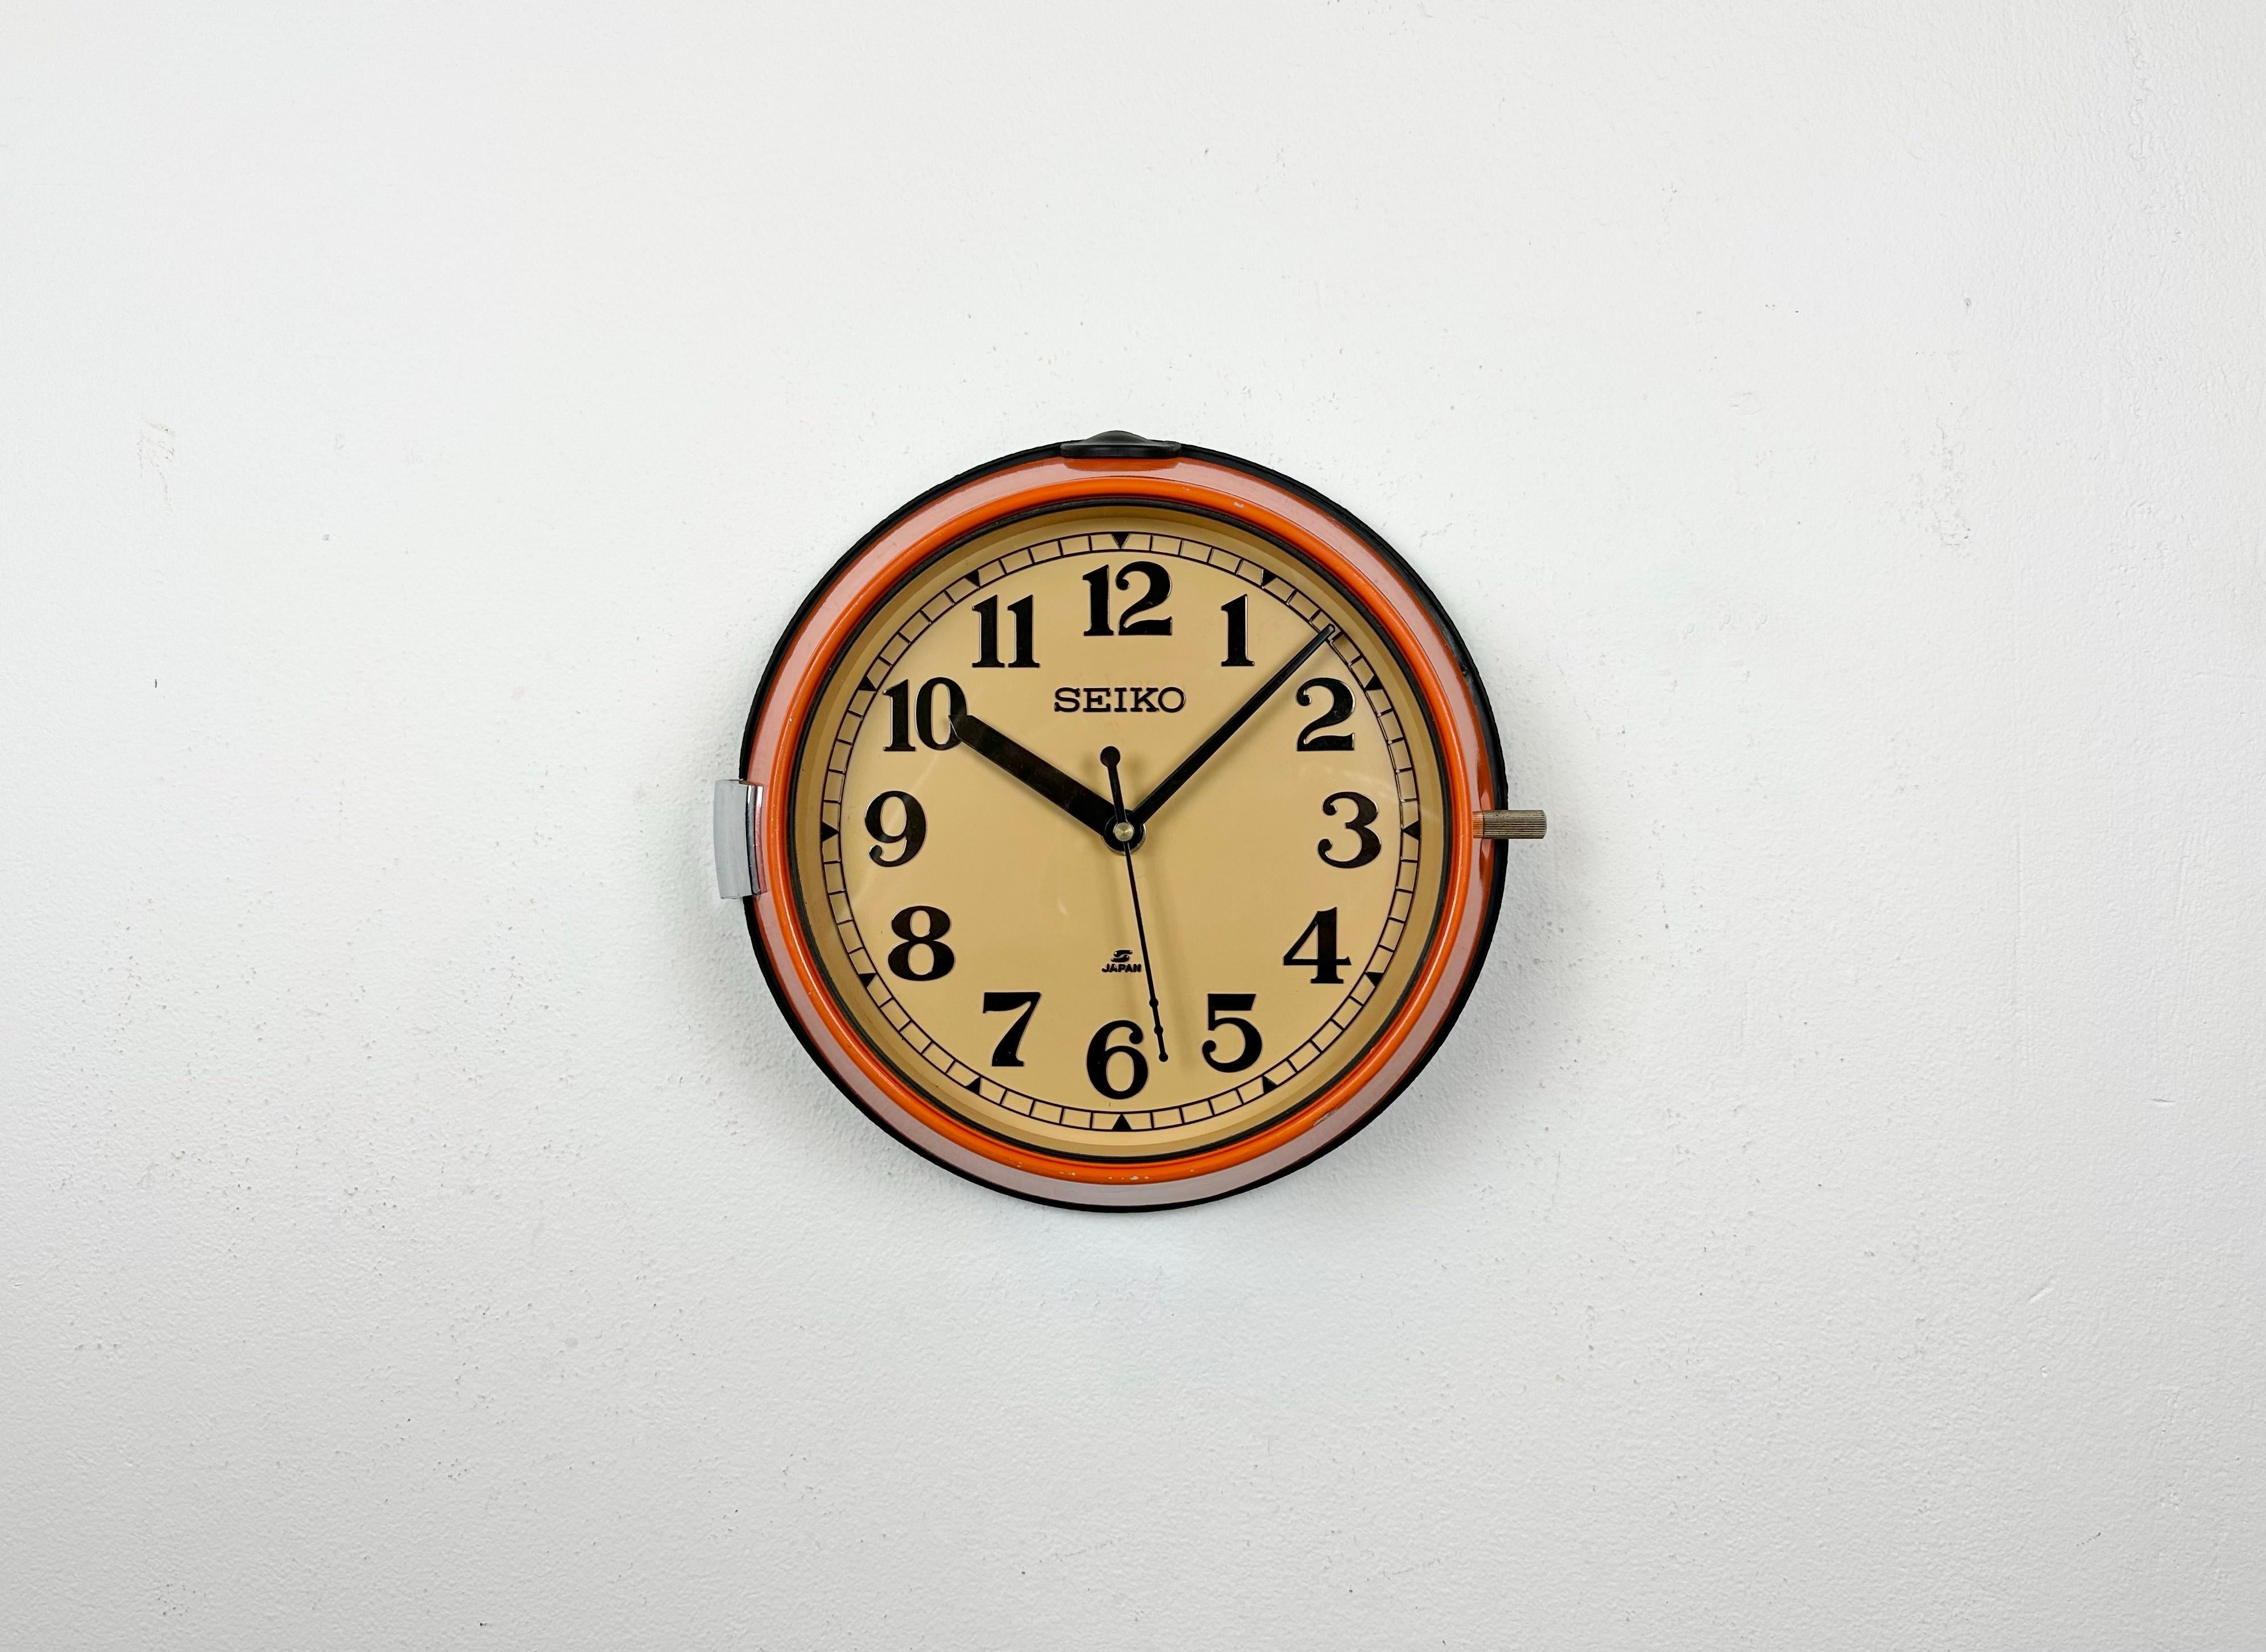 Vintage Seiko navy slave clock conçu pendant les années 1970 et produit jusqu'aux années 1990. Ces horloges étaient utilisées sur les grands pétroliers et cargos japonais. Il comporte un cadre métallique orange, un cadran en plastique et un